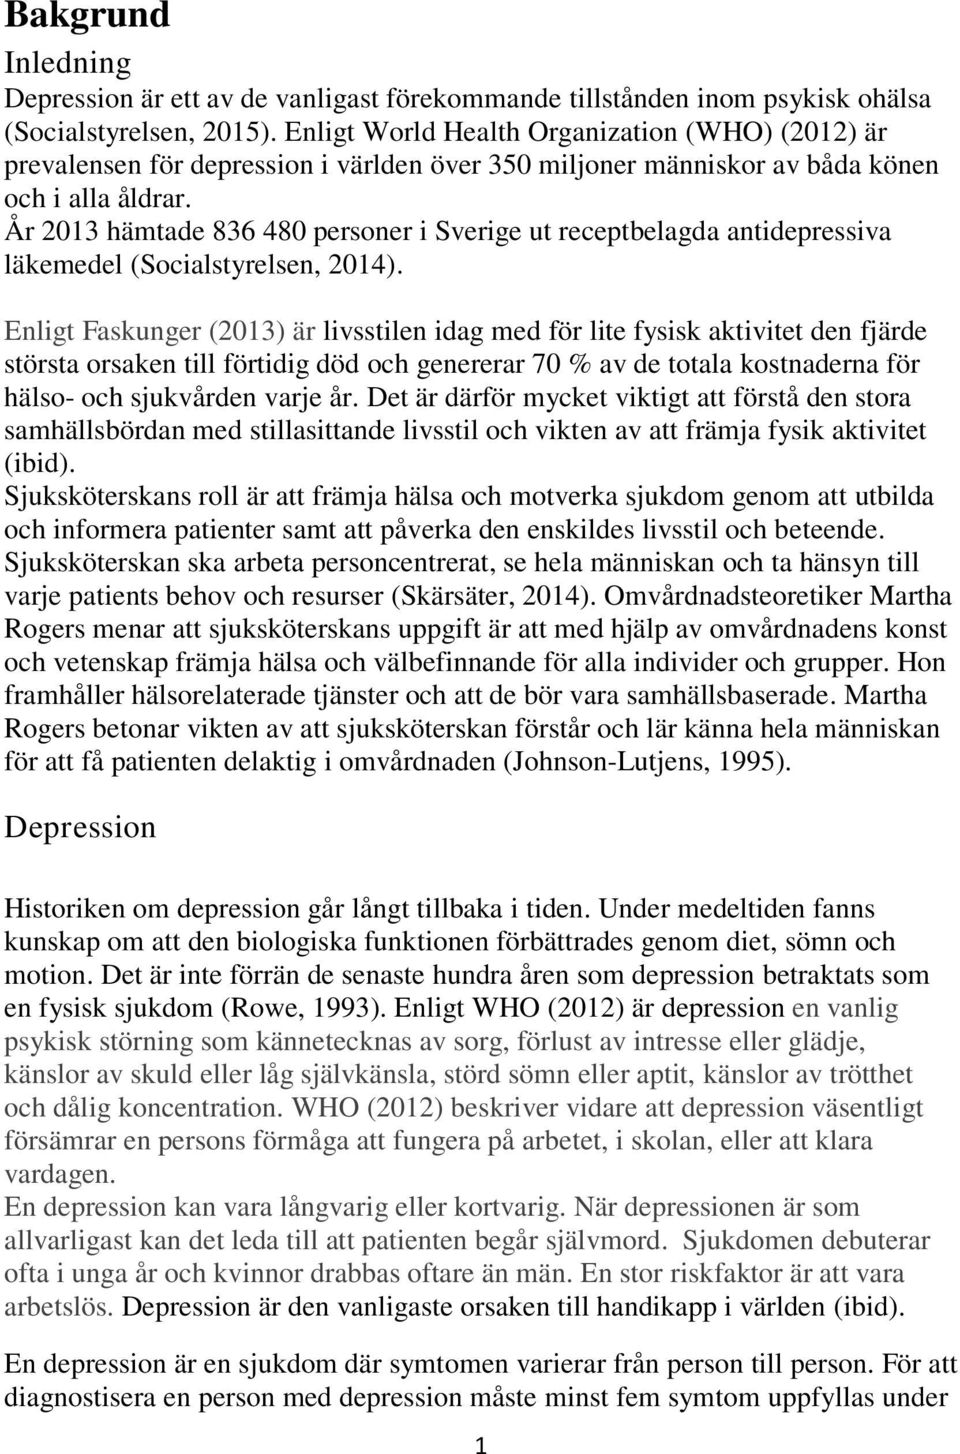 År 2013 hämtade 836 480 personer i Sverige ut receptbelagda antidepressiva läkemedel (Socialstyrelsen, 2014).